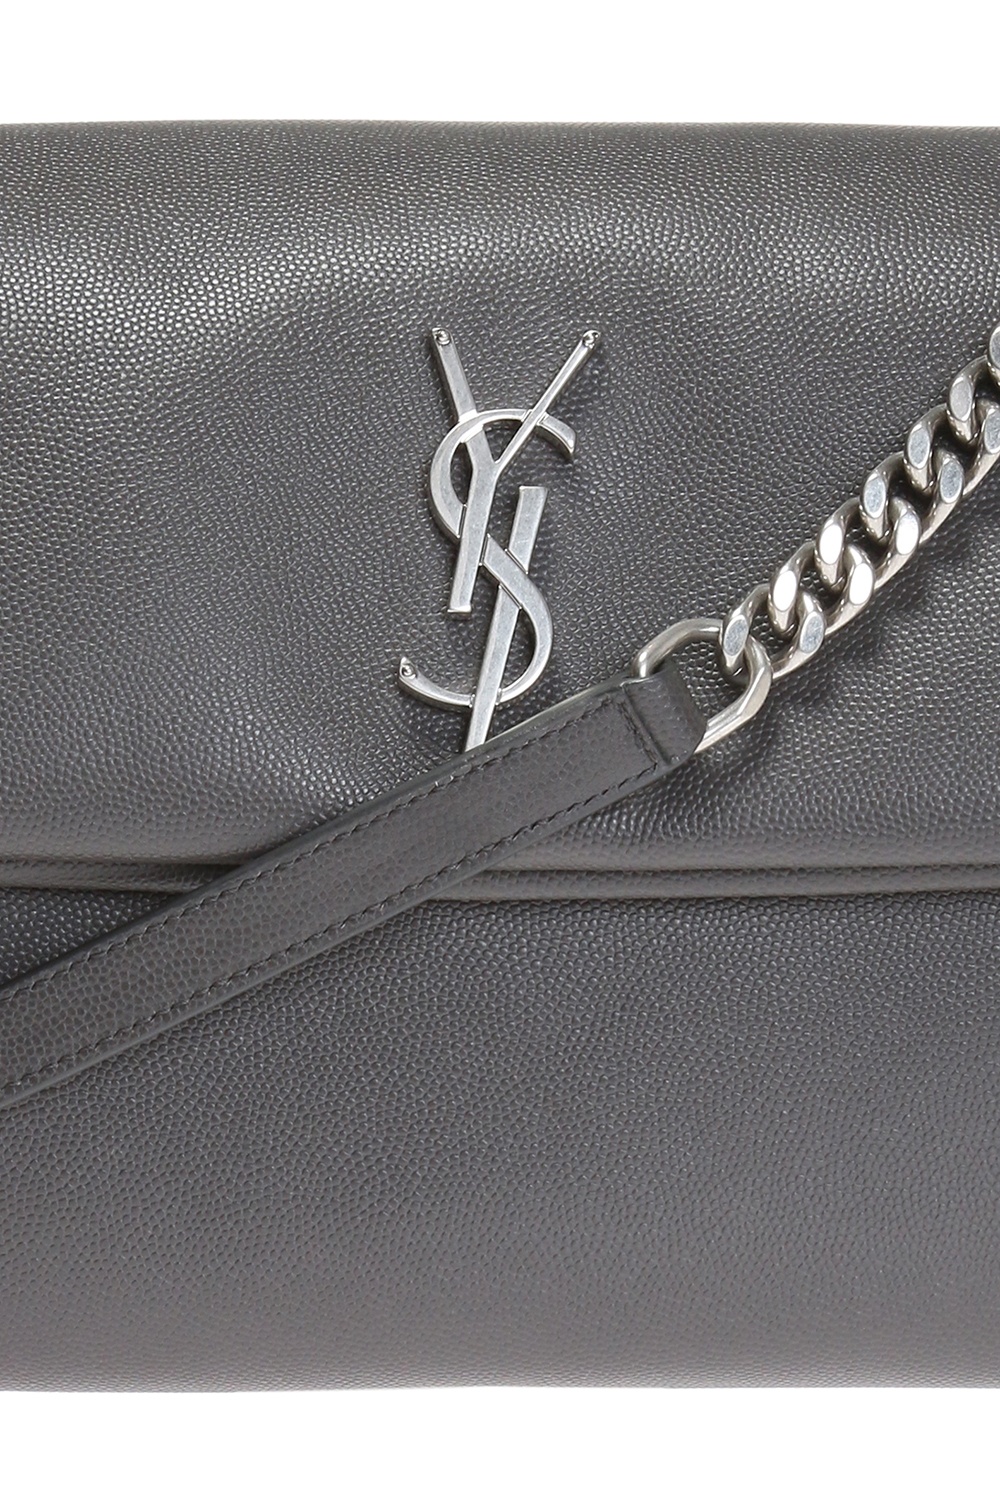 YSL Yves Saint Laurent ALL BLACK West Hollywood Medium Leather Shoulder Bag